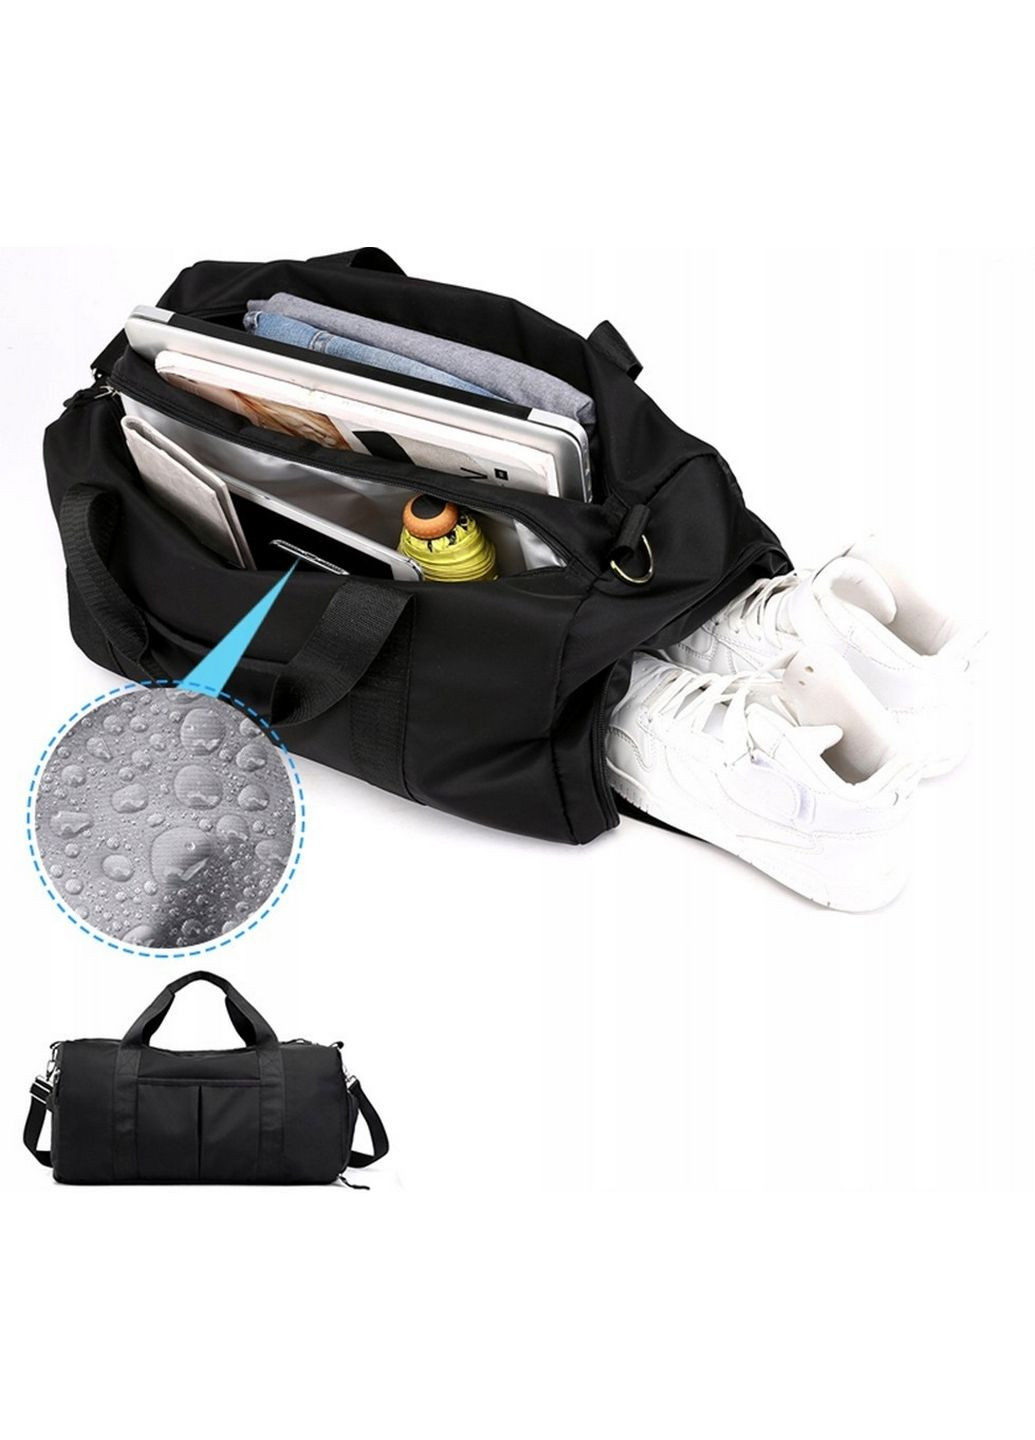 Спортивная сумка с отделами для обуви, влажных вещей 18L 40x24x18 см Edibazzar (289460426)